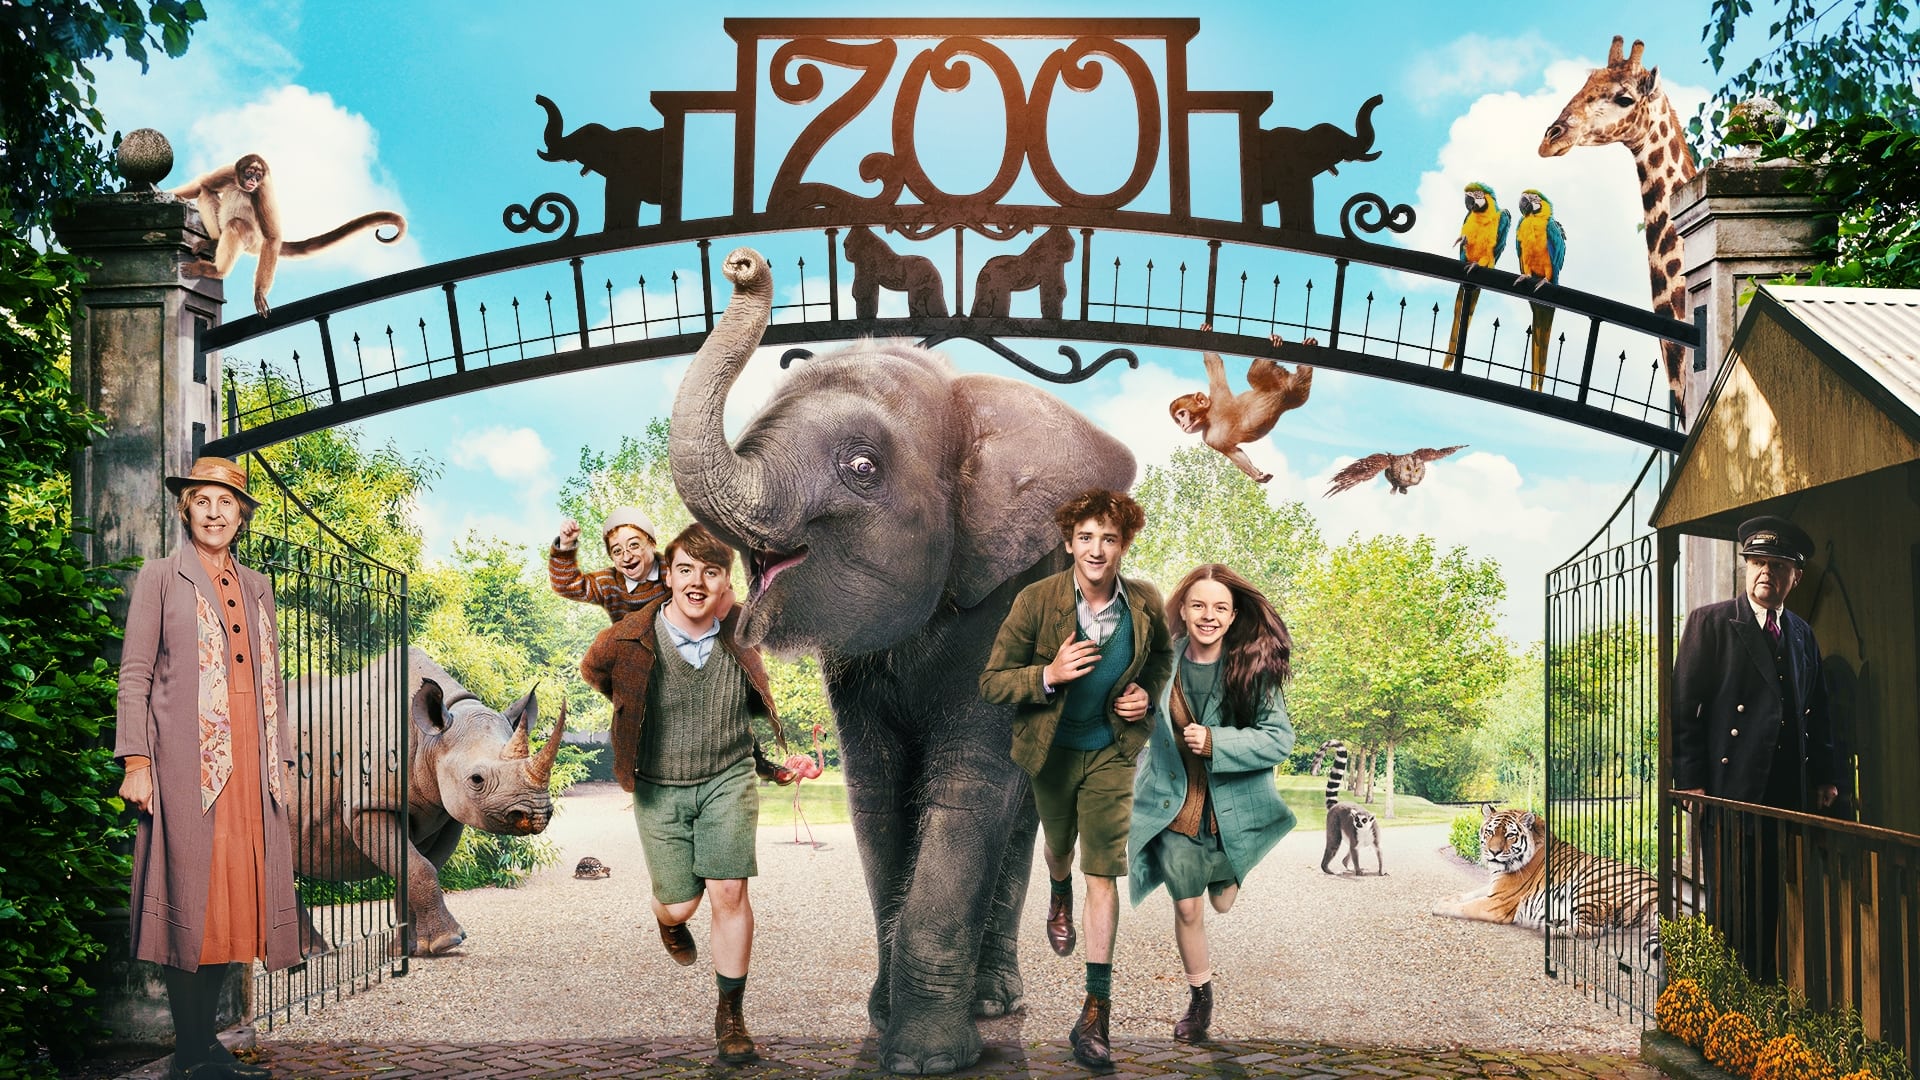 Le zoo : Sauvez Buster l'éléphant ! (2018)